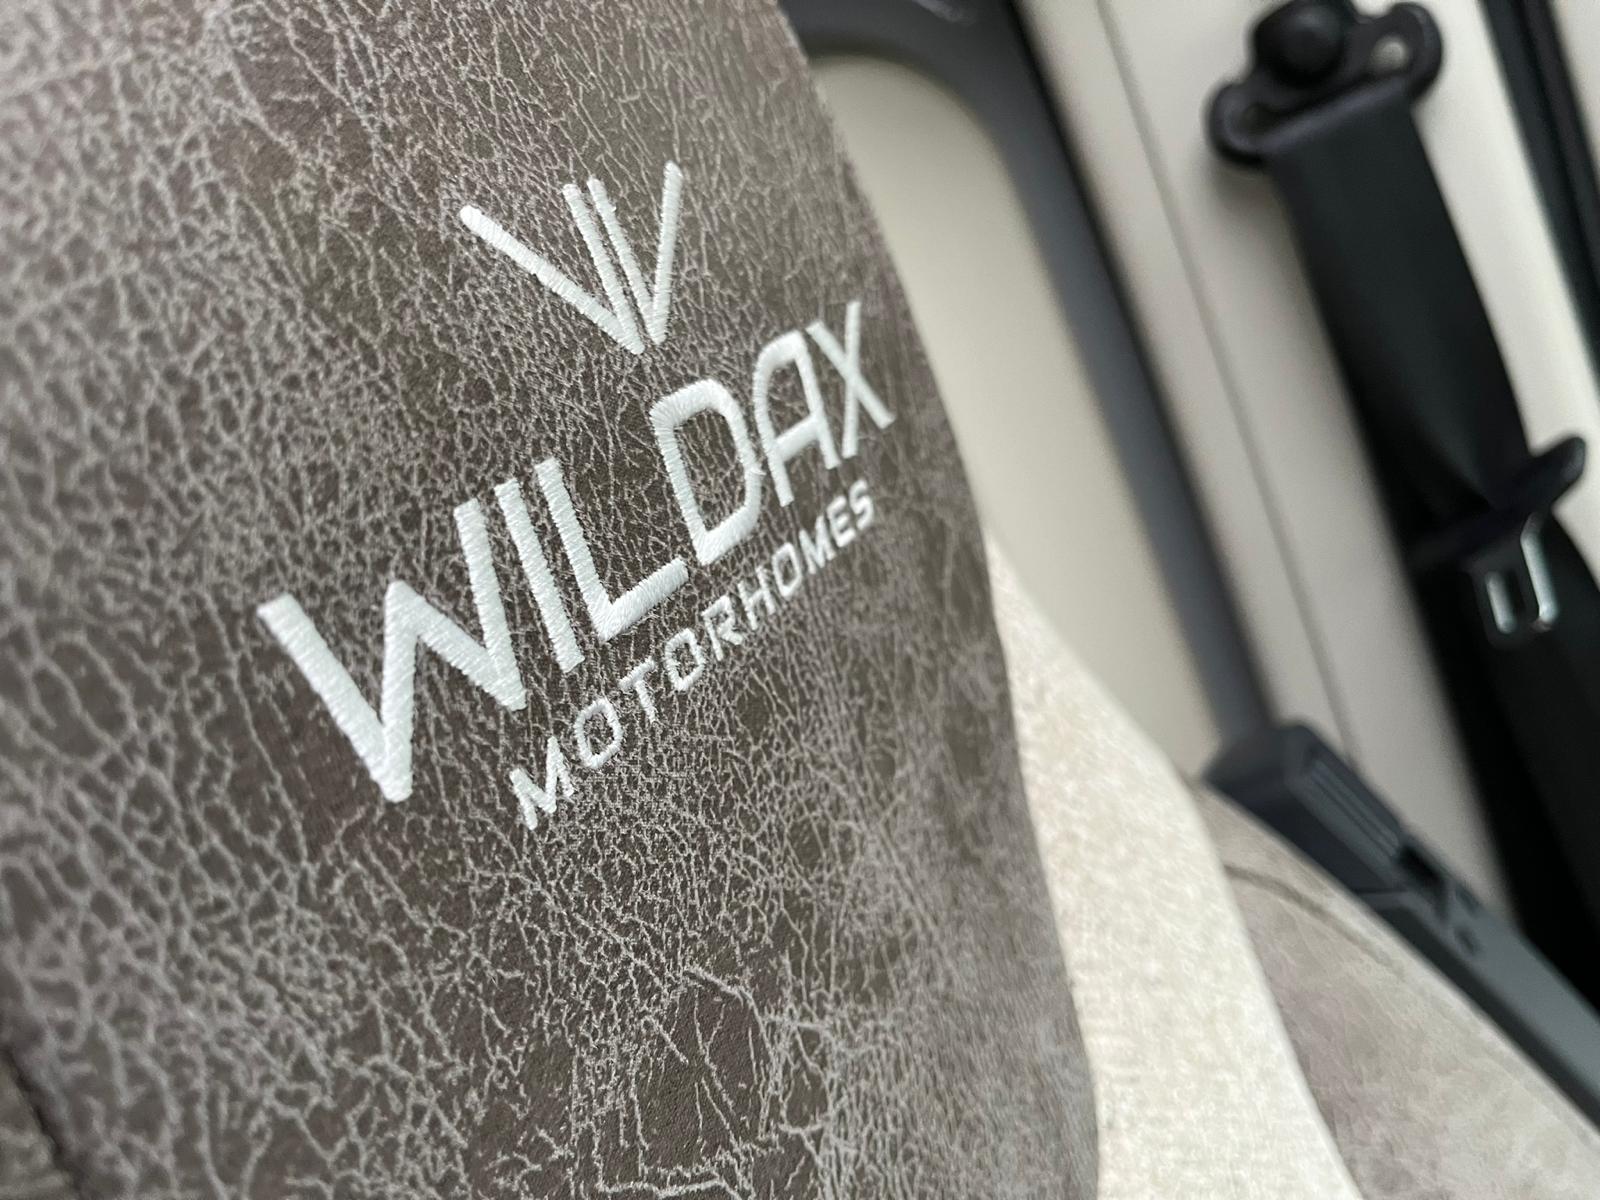 WILDAX AURORA XL - VAT QUALIFYING